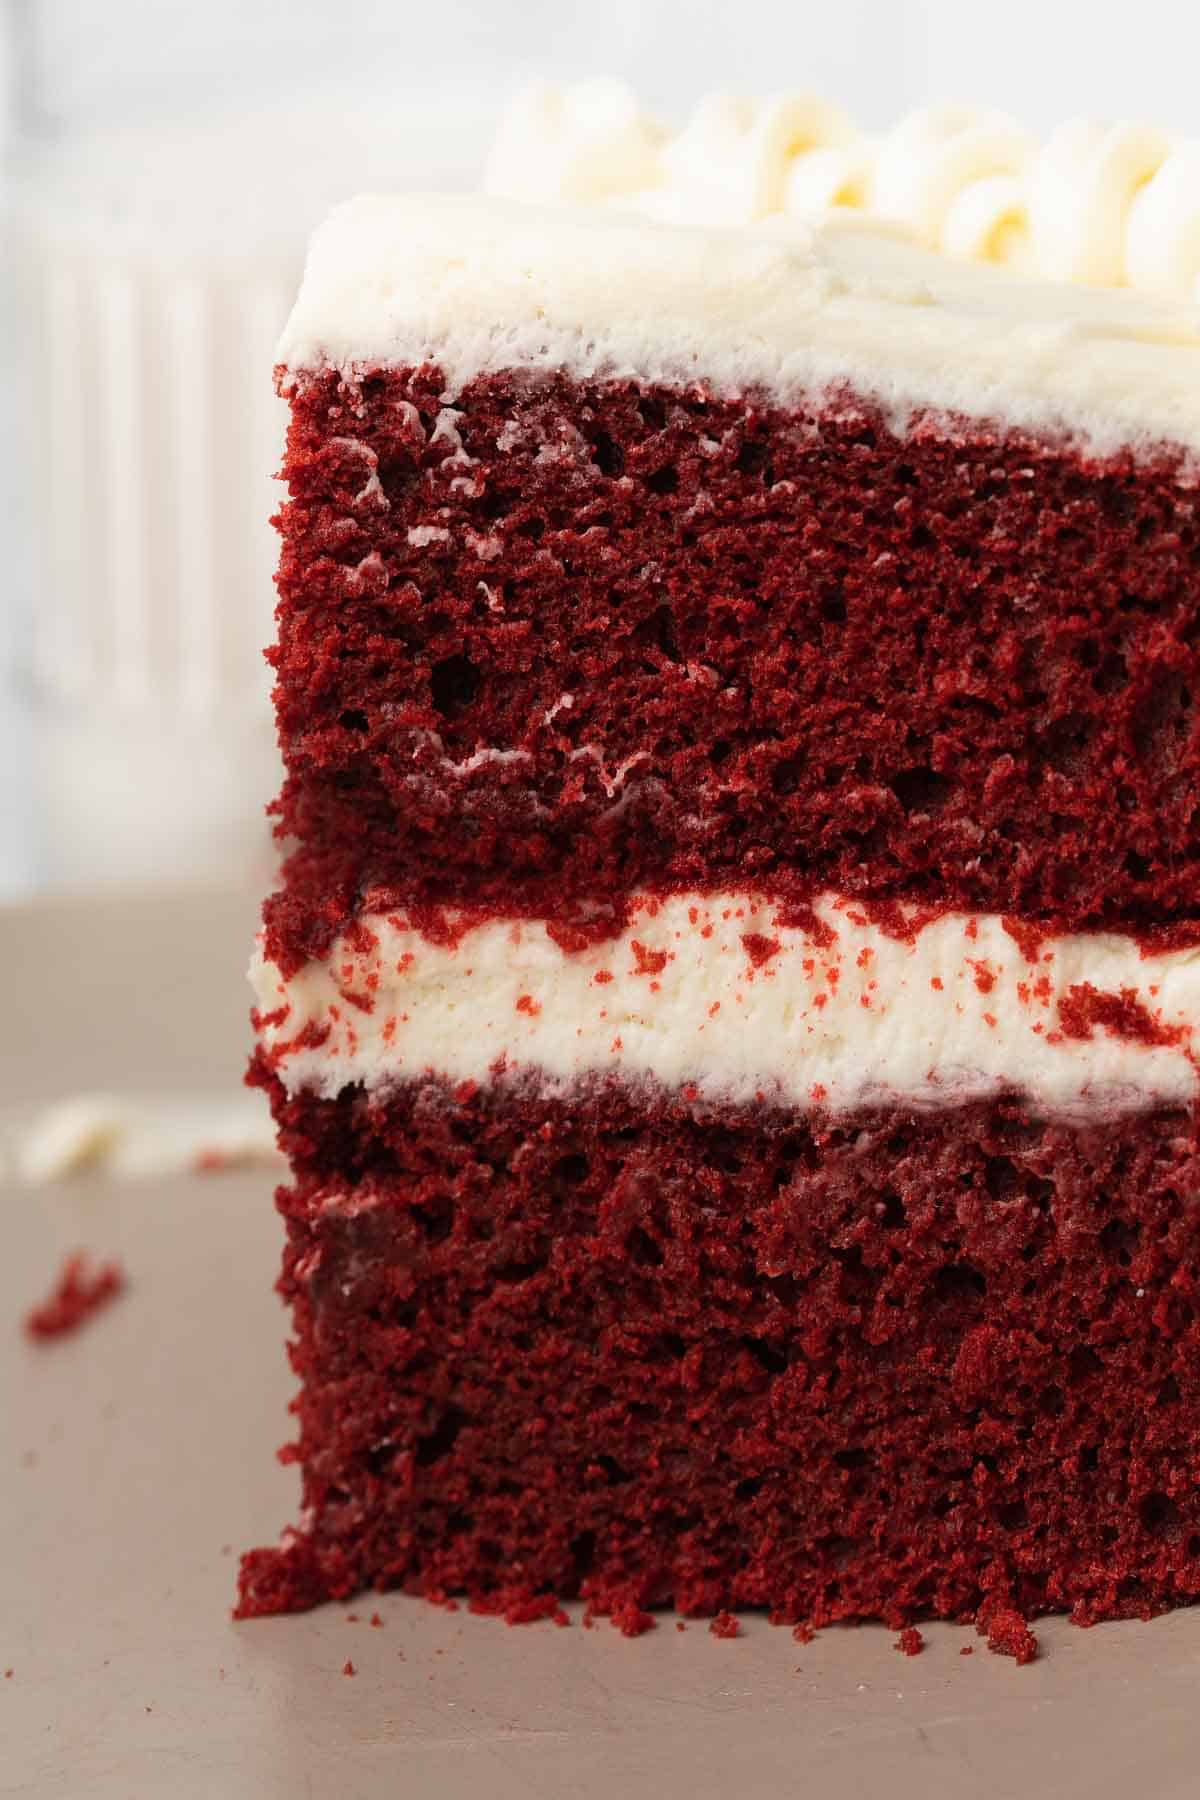 slice of red velvet cake on gray plate